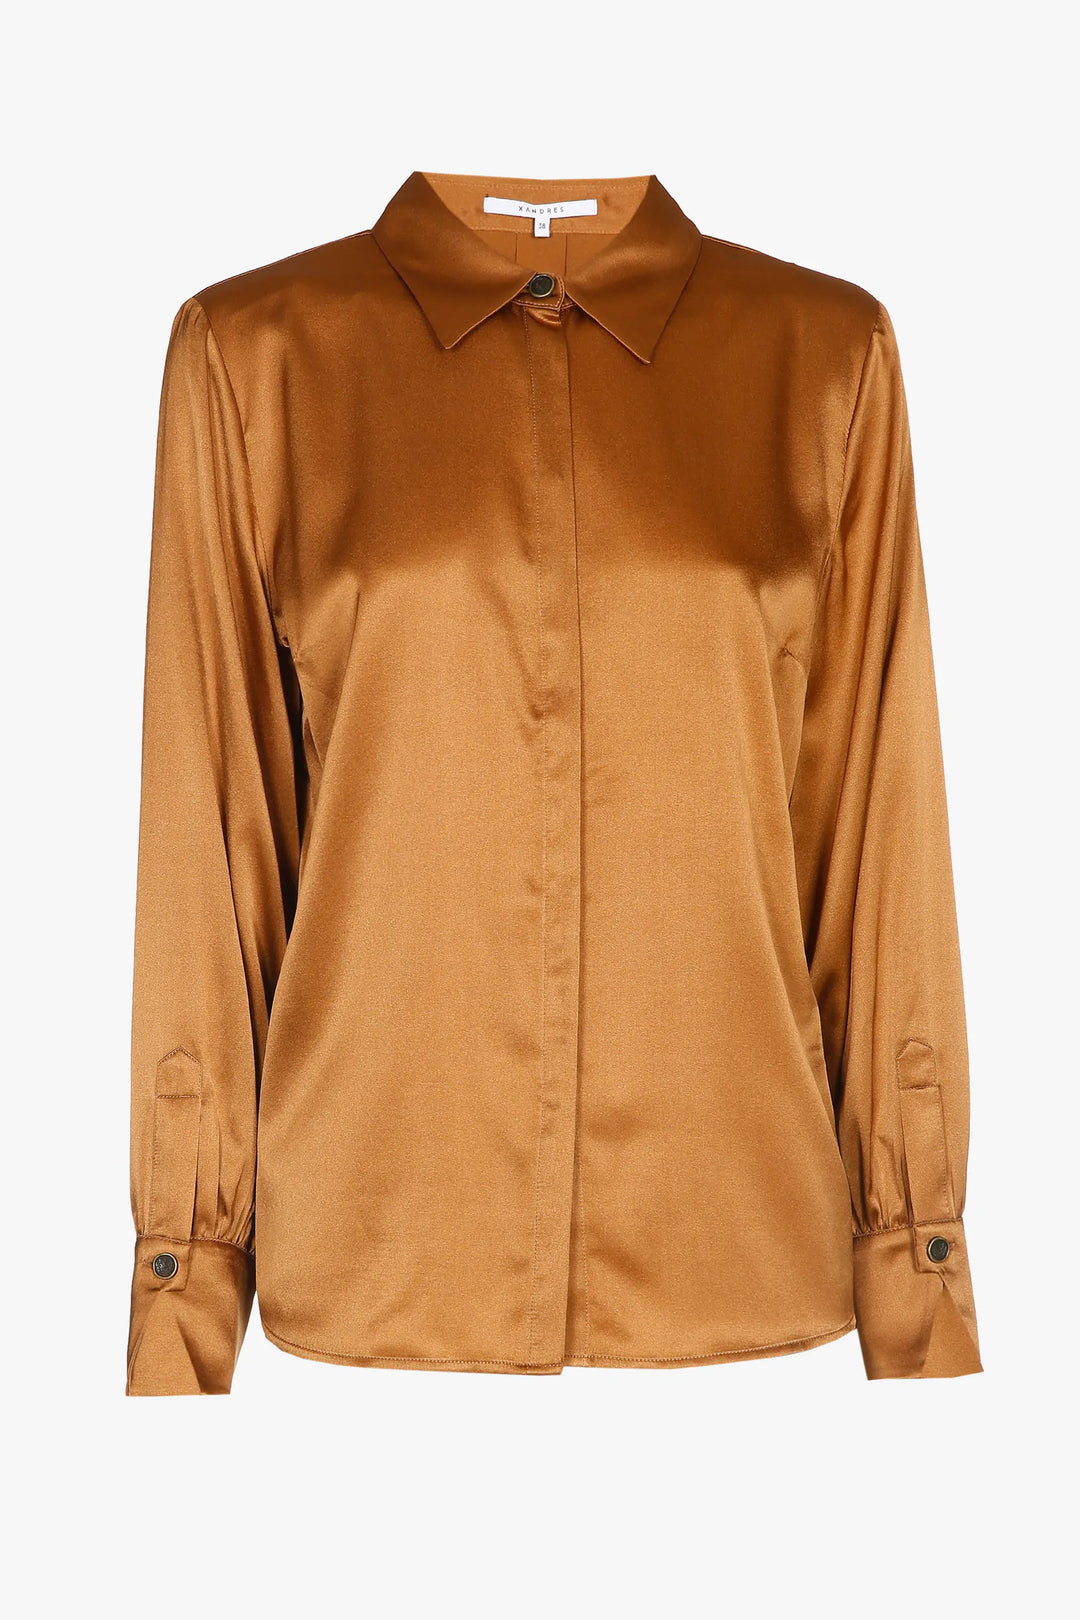 camel zijden blouse - xandres - - grote maten - dameskleding - kledingwinkel - herent - leuven